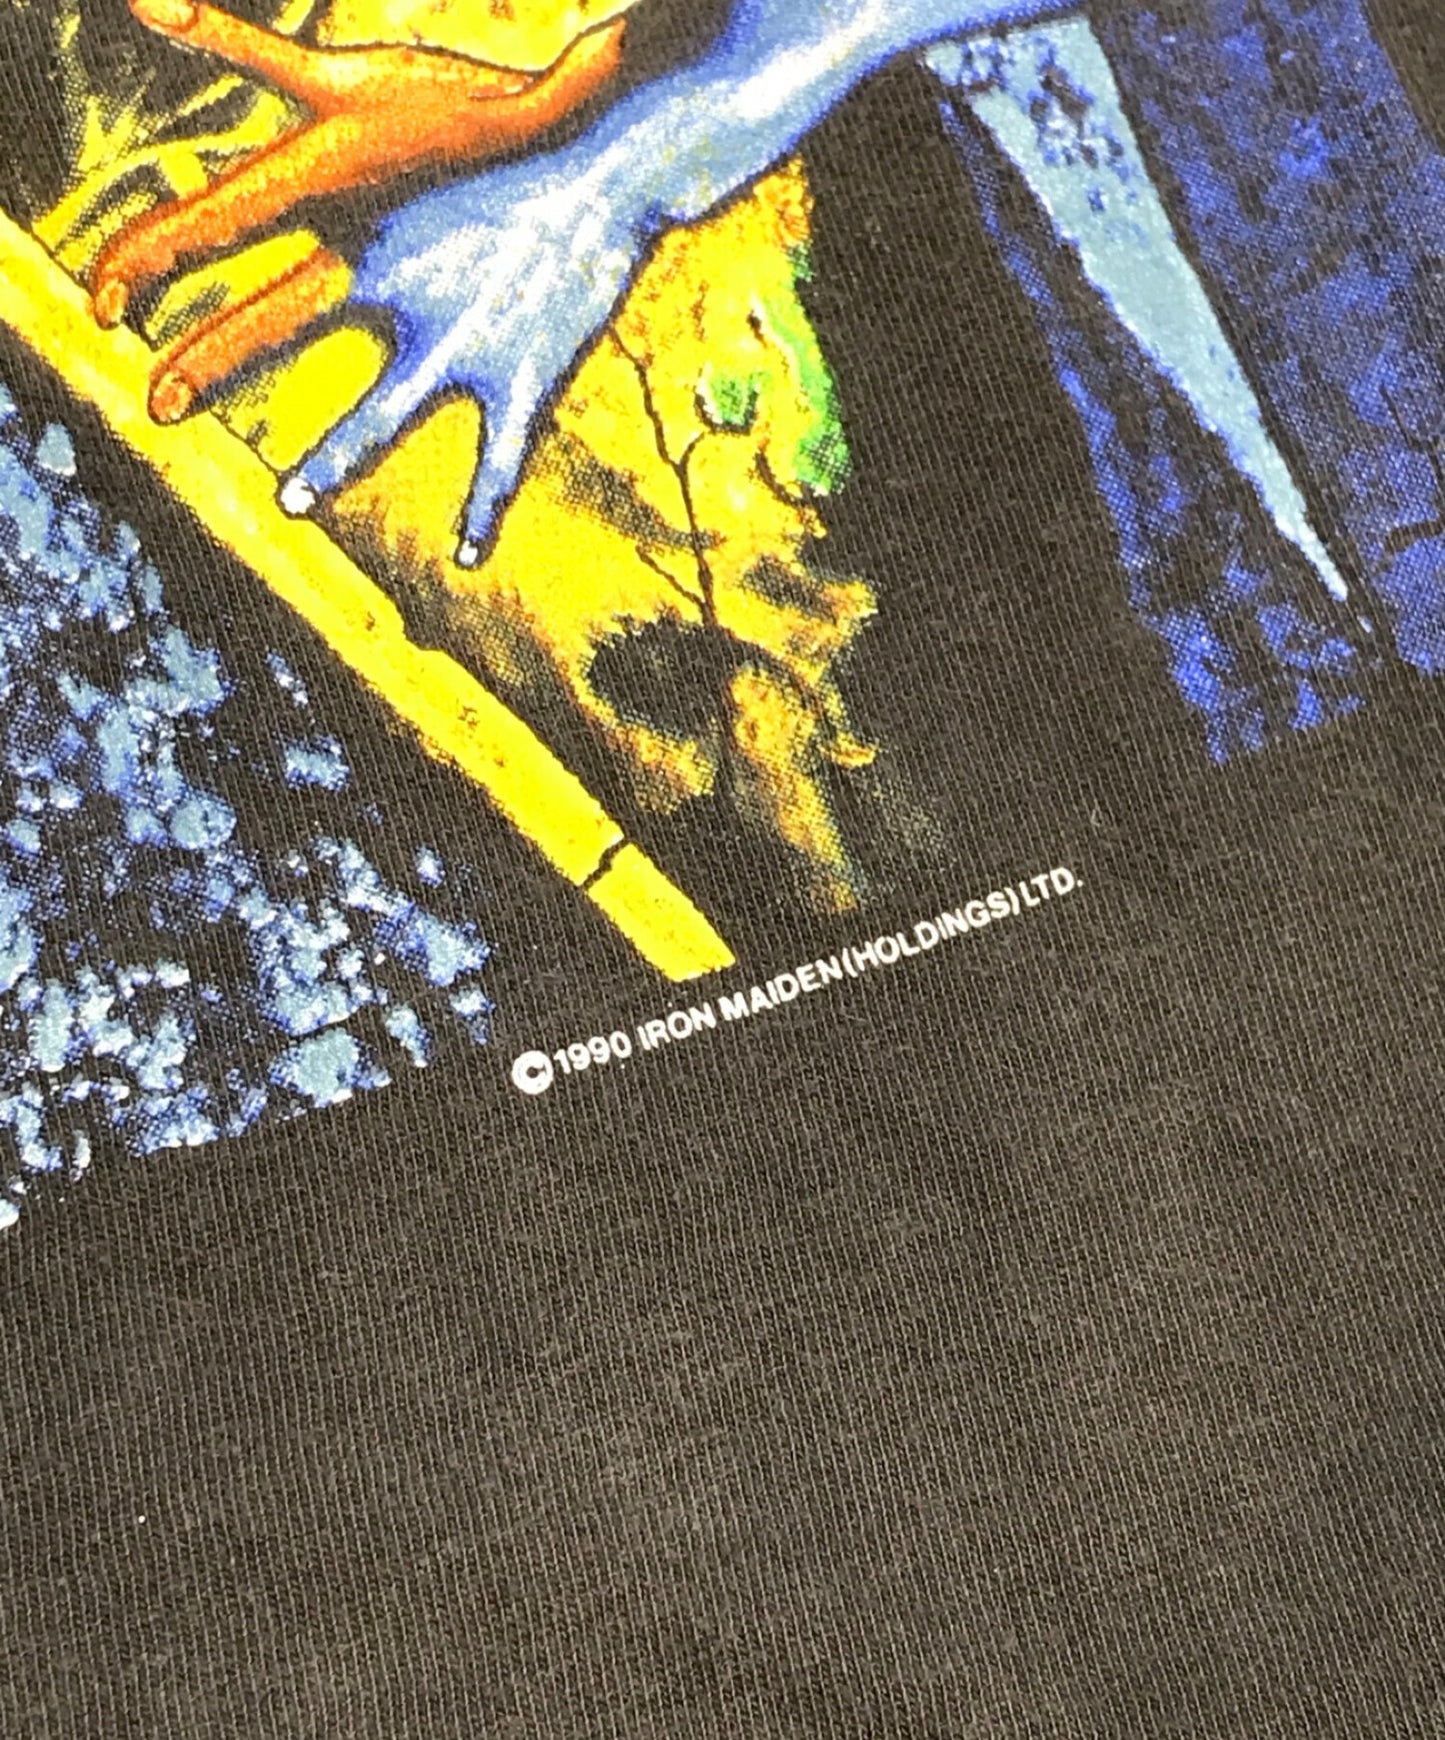 铁娘90年代乐队T恤